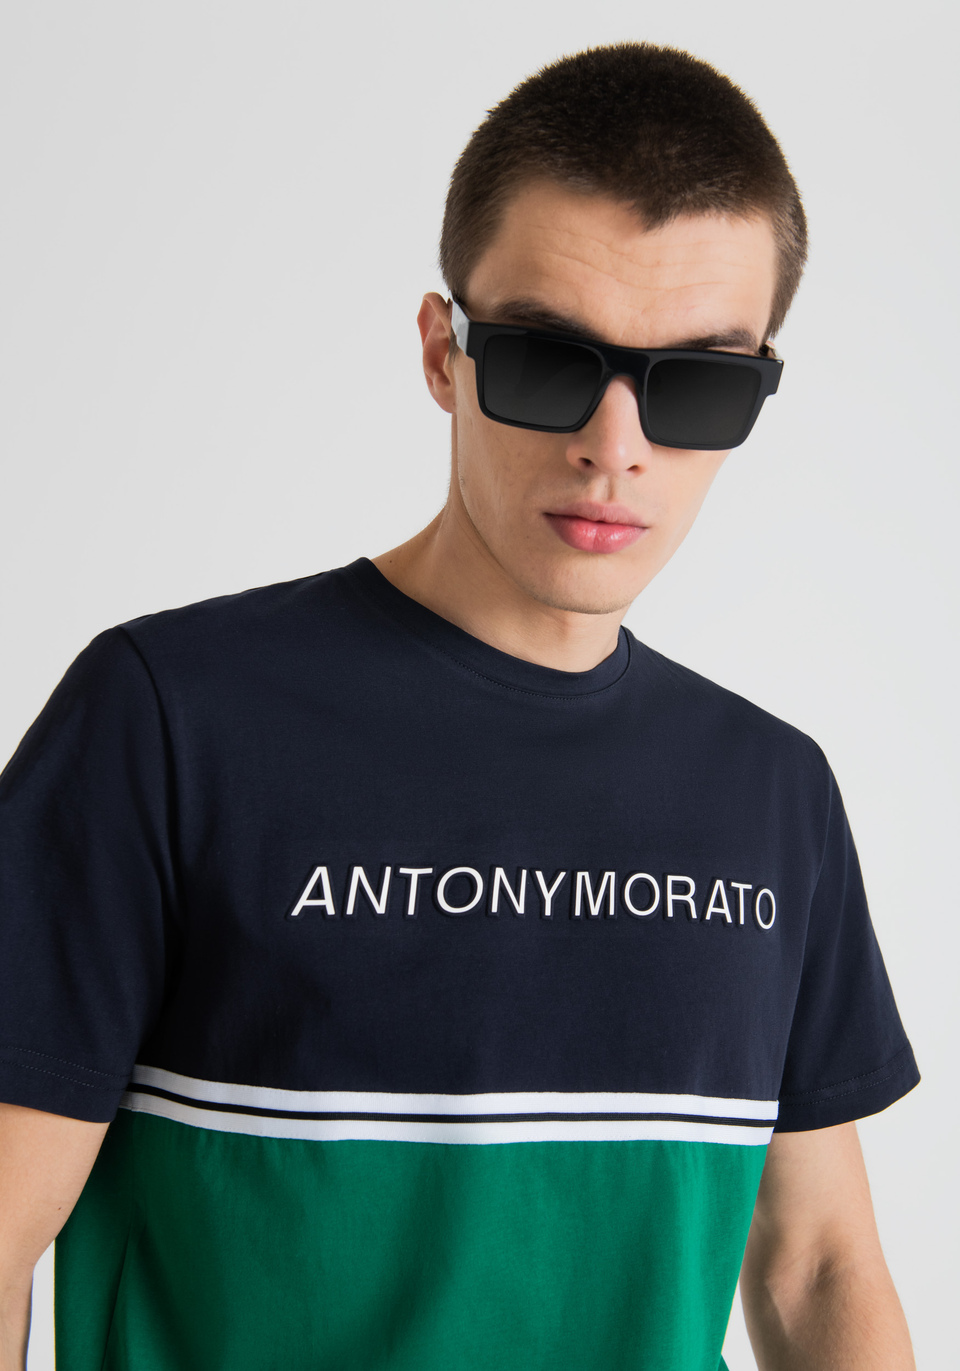 LOOK 31 - Antony Morato Online Shop